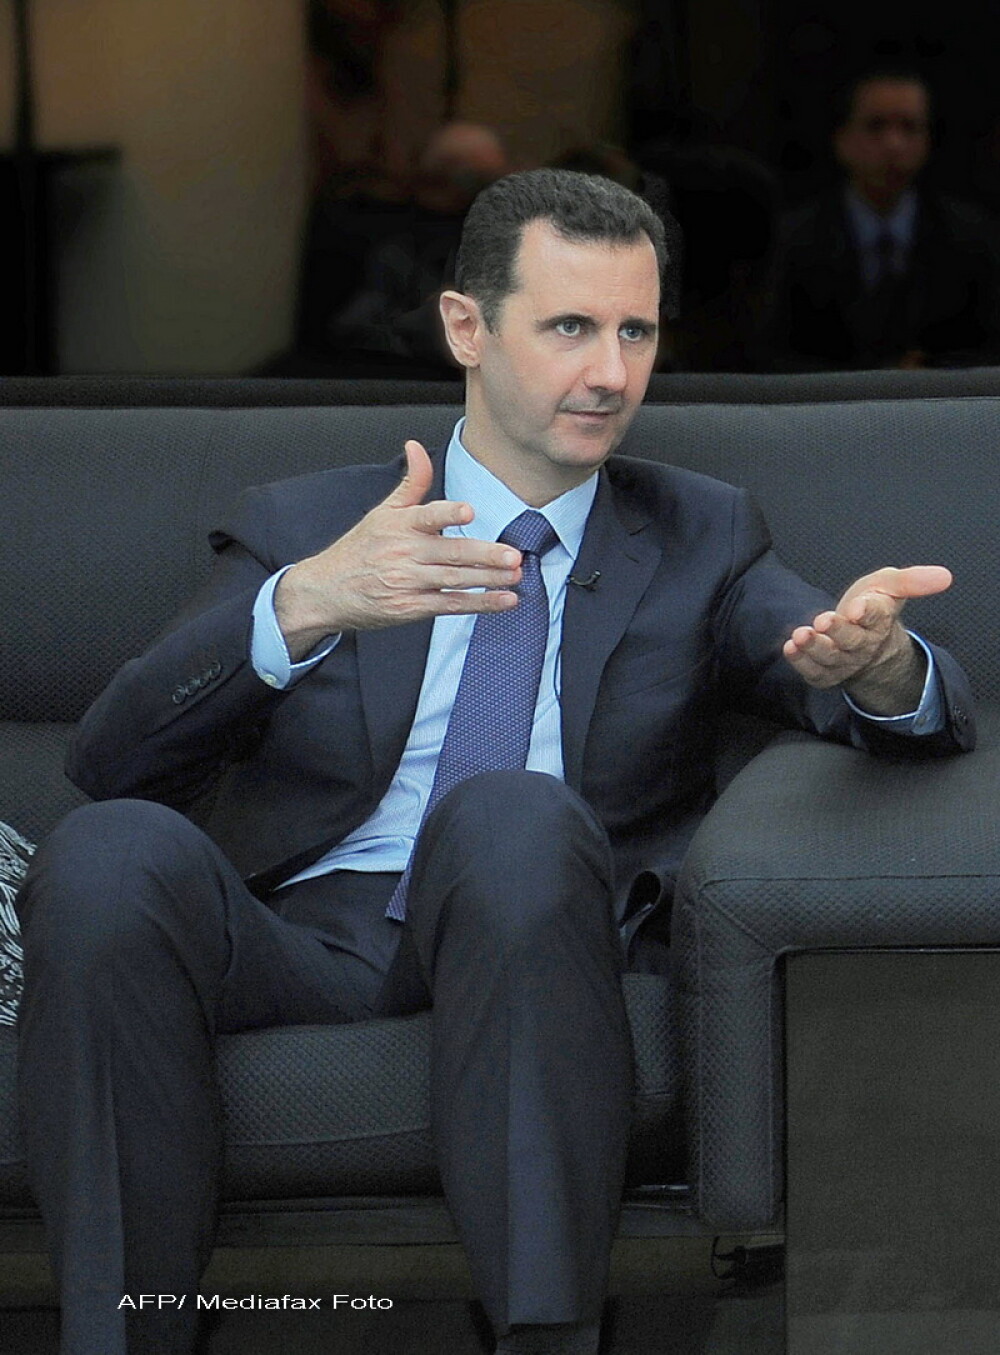 Mesajul pe care fiul lui Bashar al-Assad l-ar fi scris pe Facebook. 